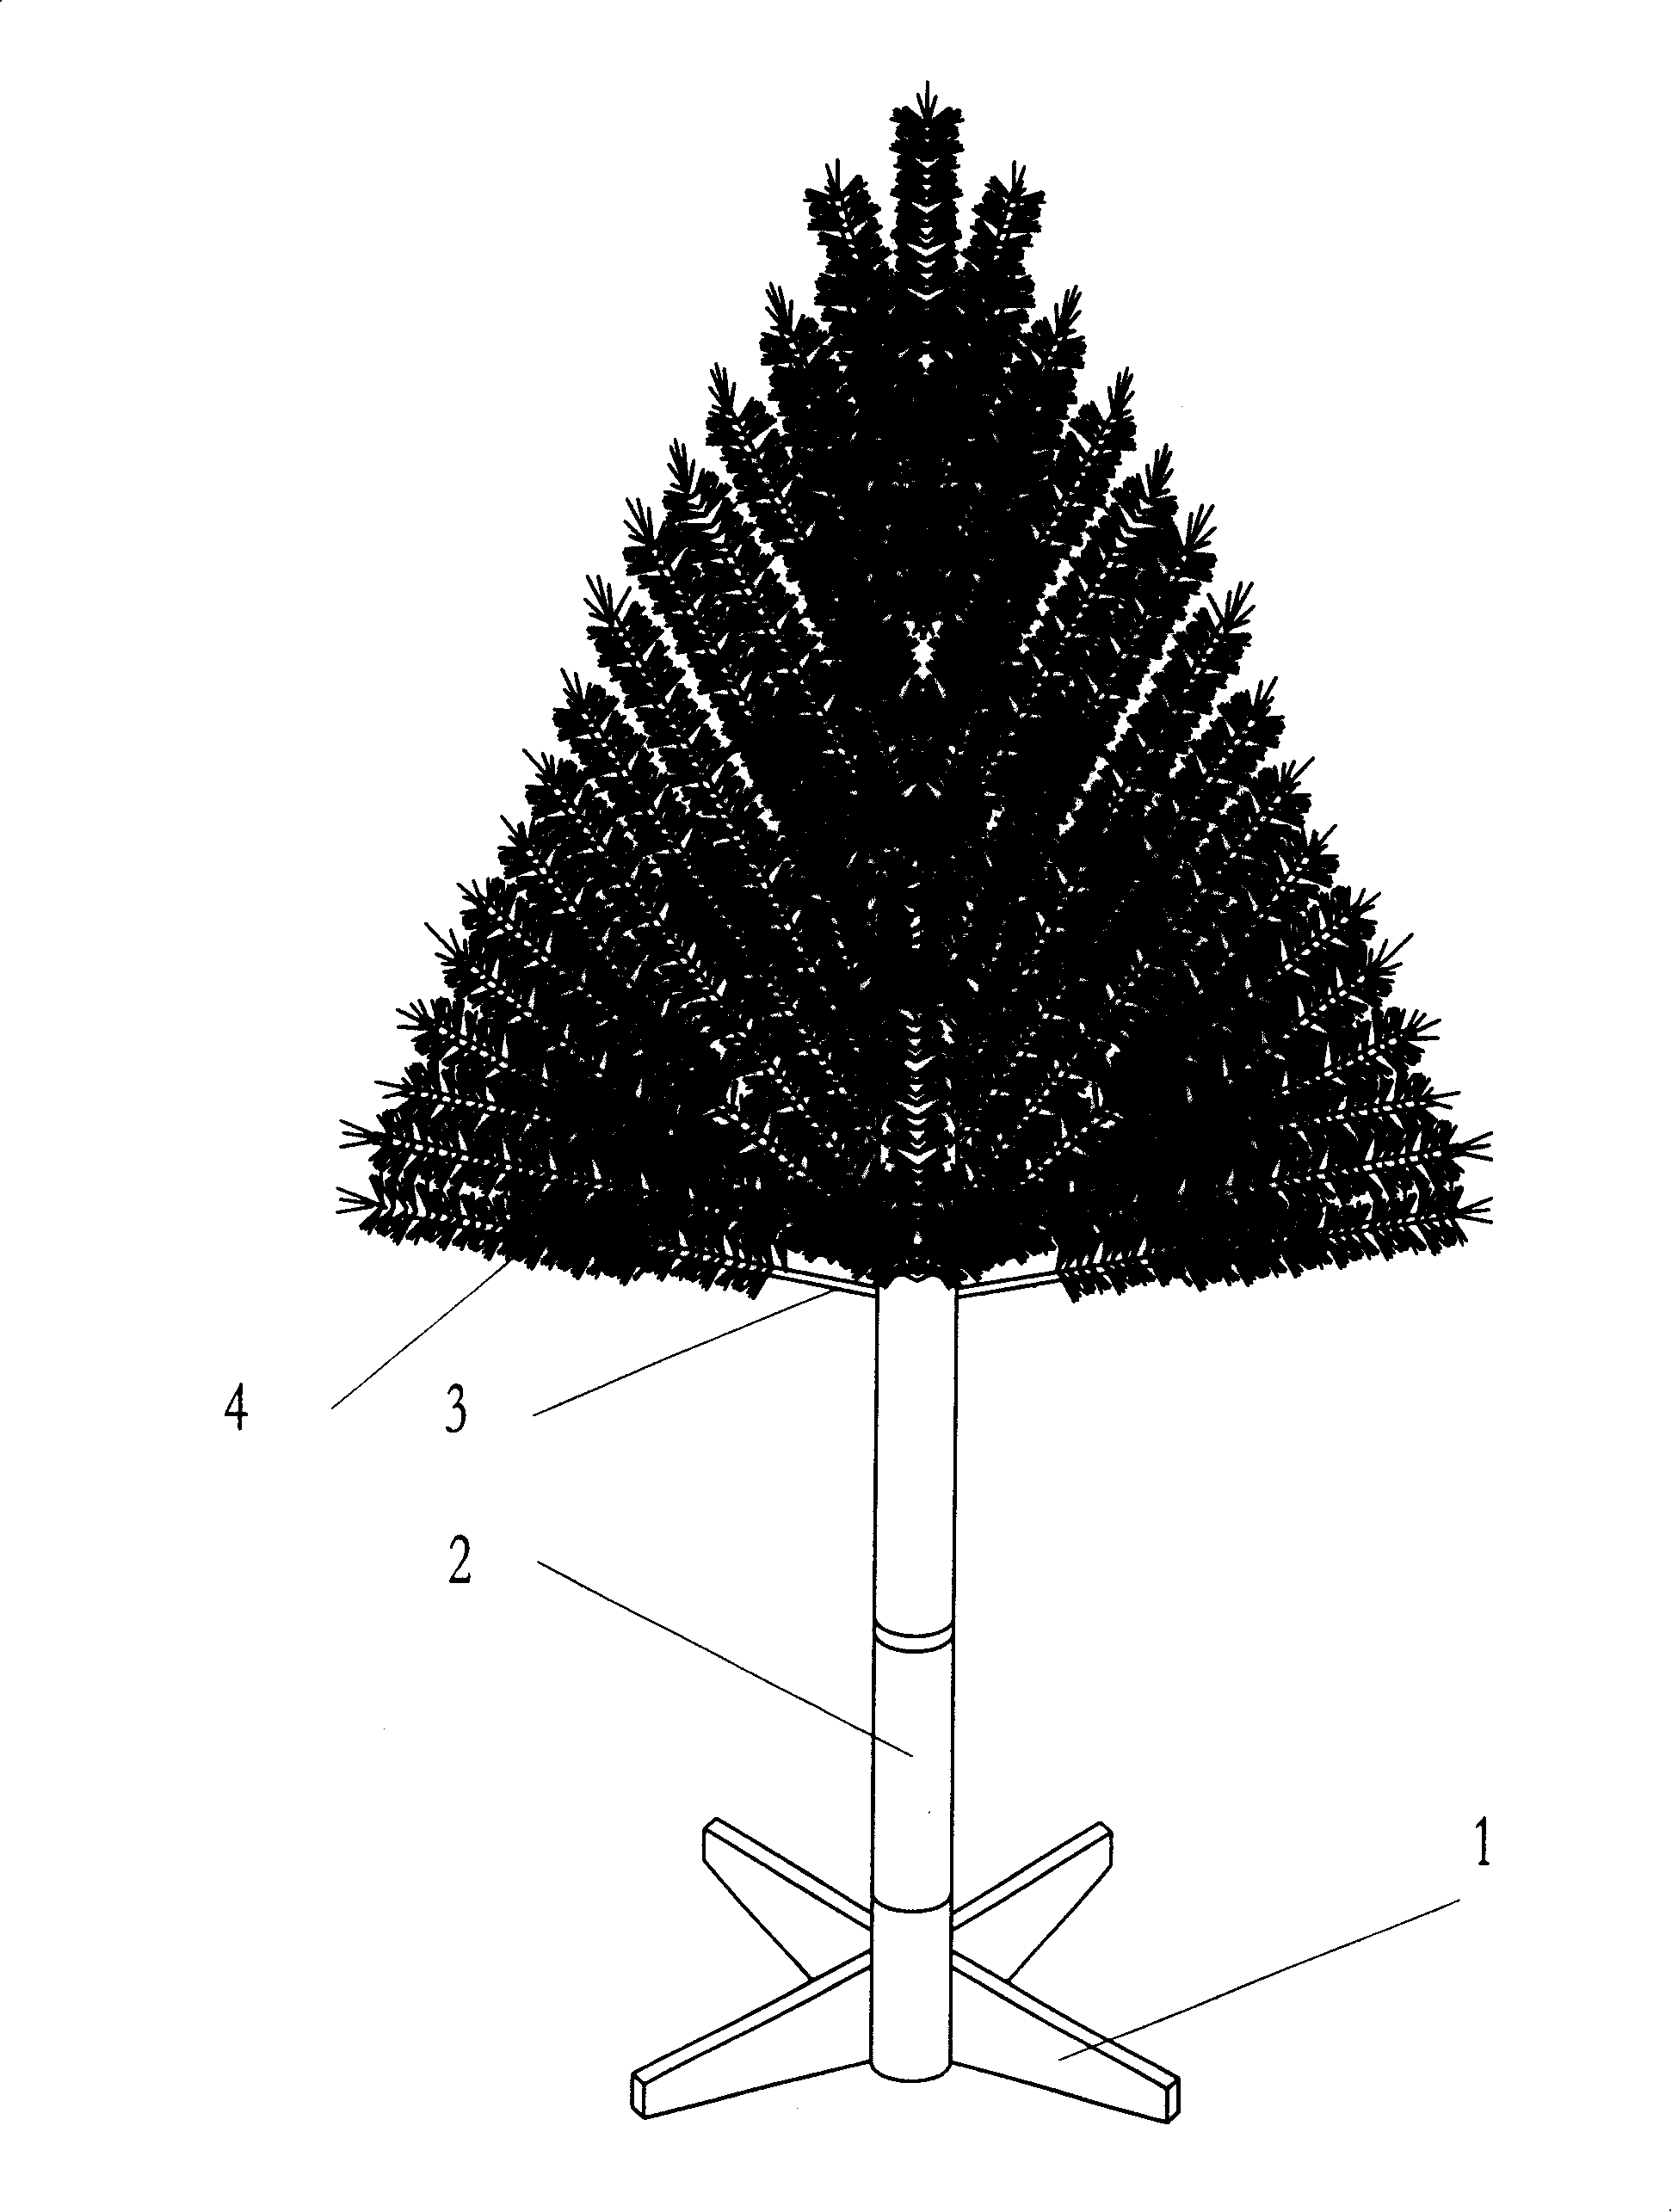 Branch inserting tree